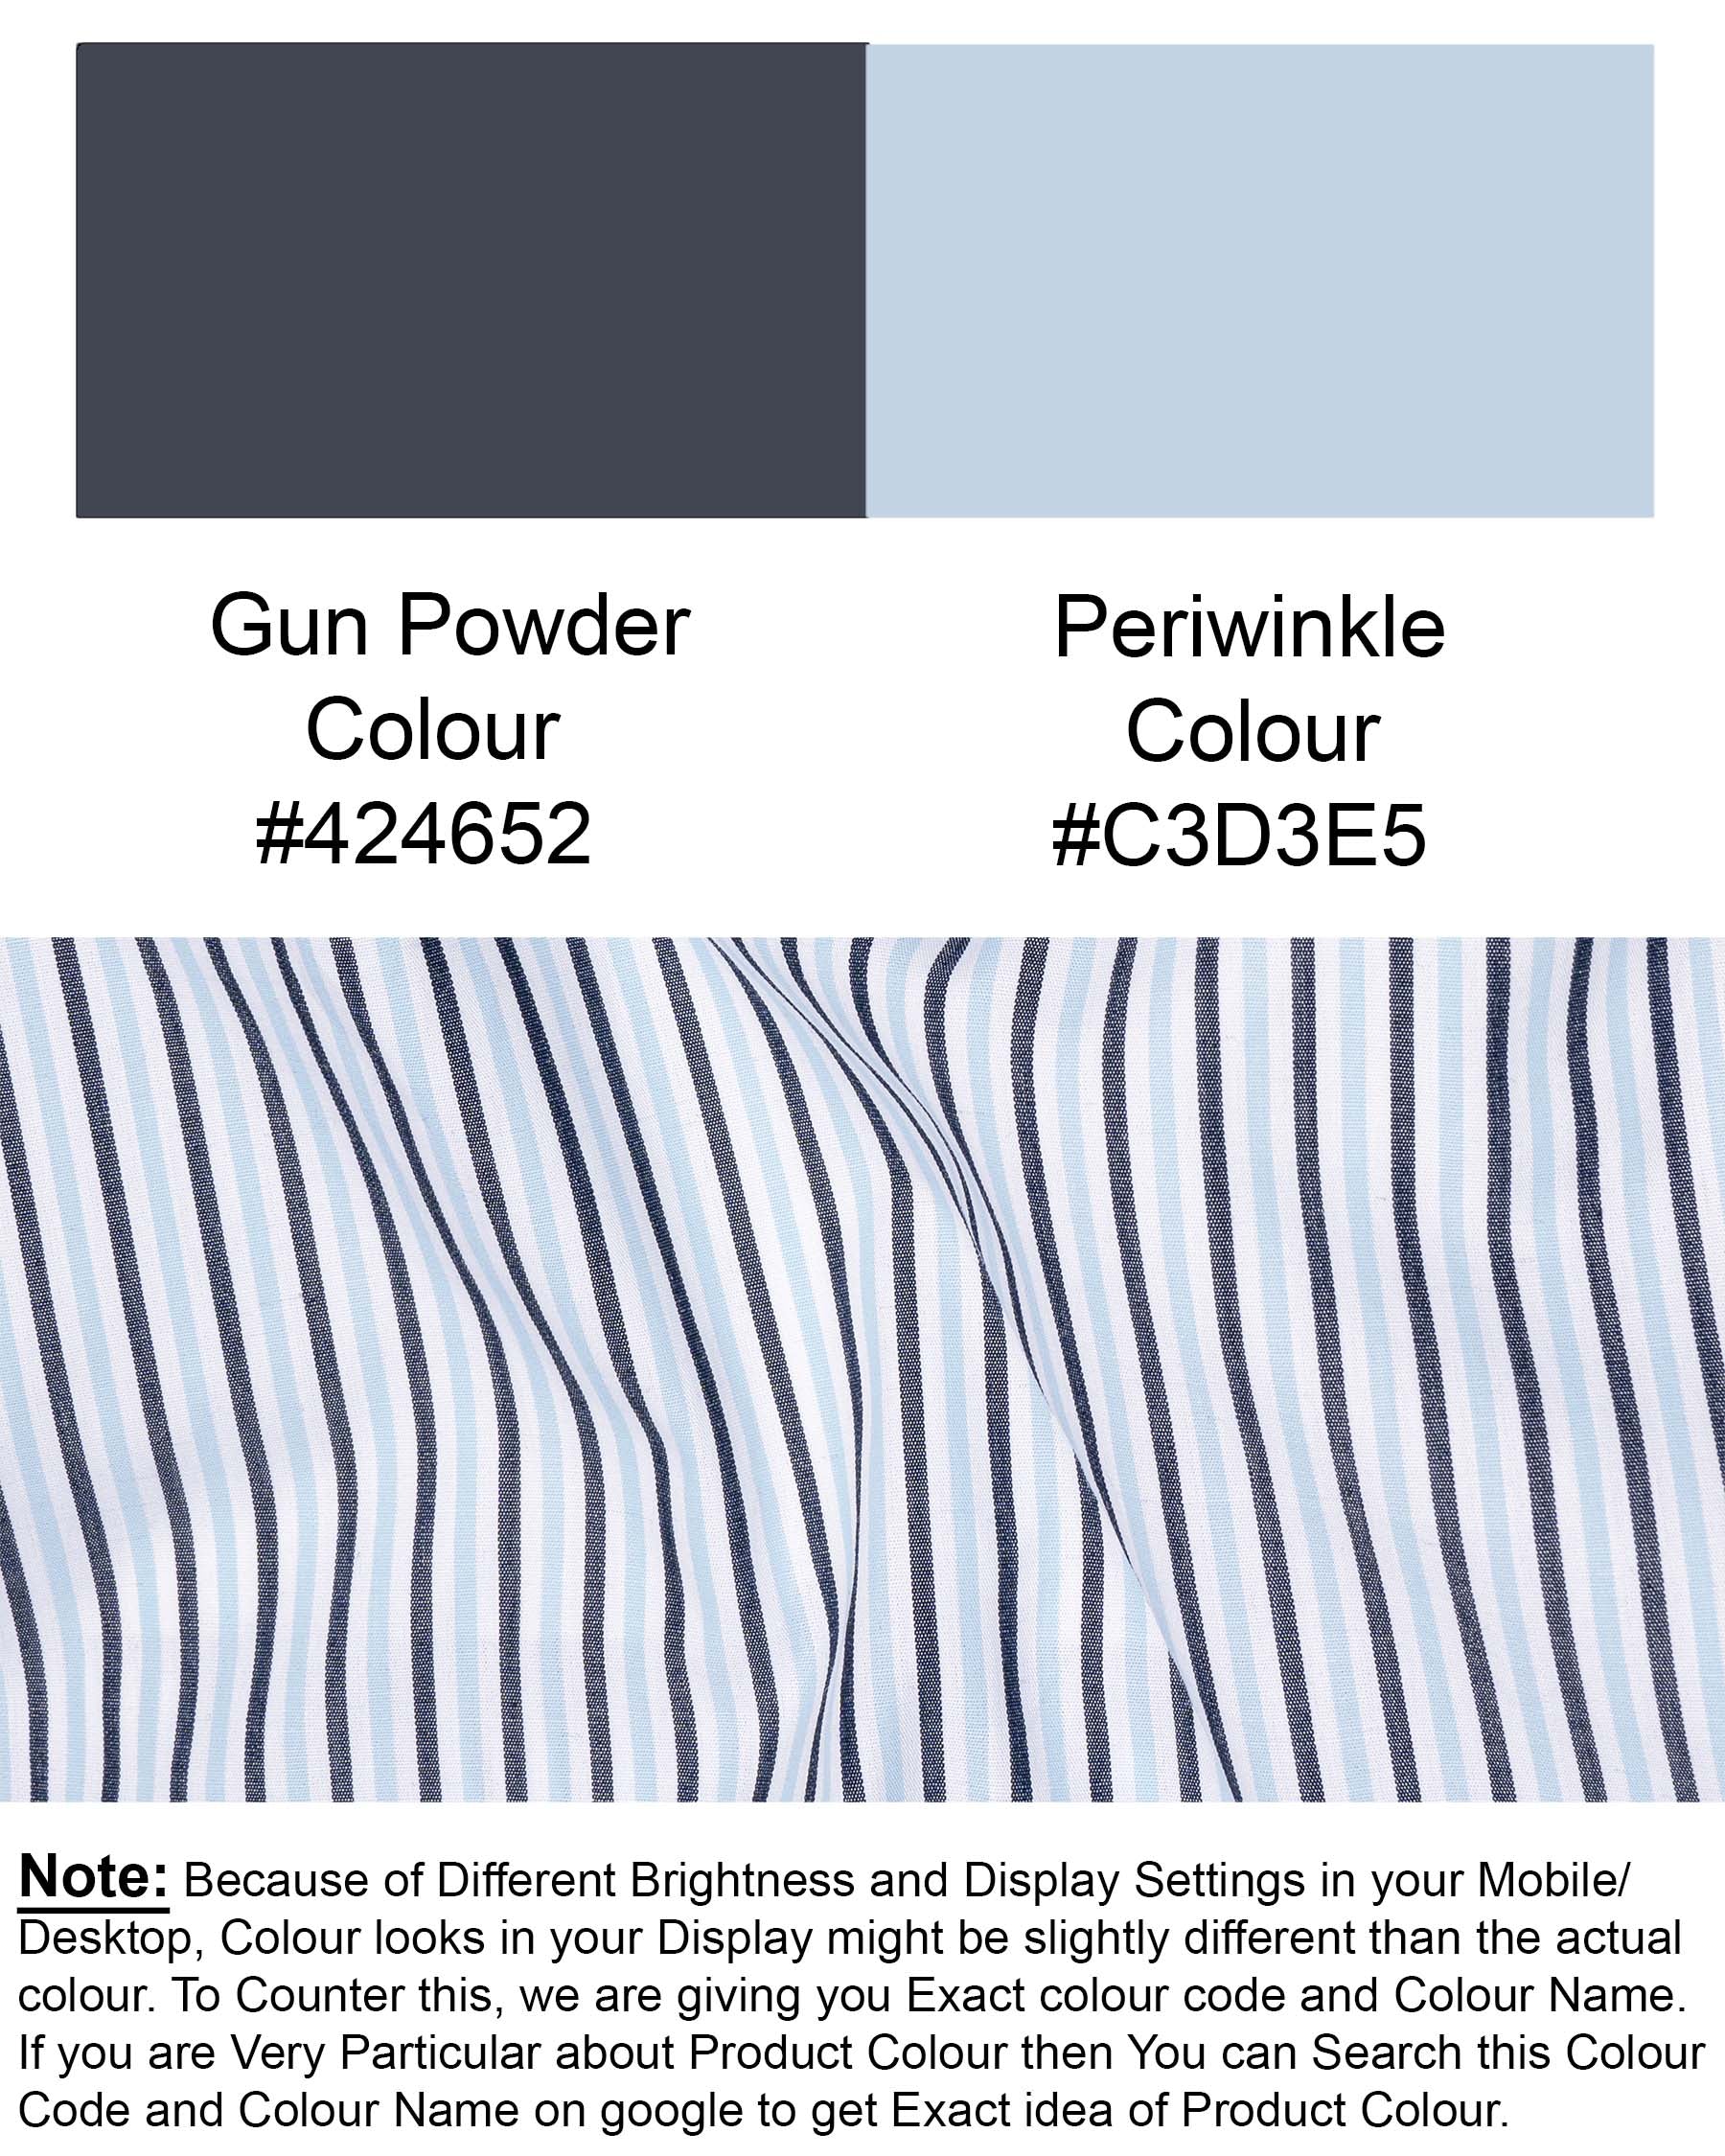 Periwinkle Blue Striped Premium Cotton Shirt 6966-M-38,6966-M-H-38,6966-M-39,6966-M-H-39,6966-M-40,6966-M-H-40,6966-M-42,6966-M-H-42,6966-M-44,6966-M-H-44,6966-M-46,6966-M-H-46,6966-M-48,6966-M-H-48,6966-M-50,6966-M-H-50,6966-M-52,6966-M-H-52